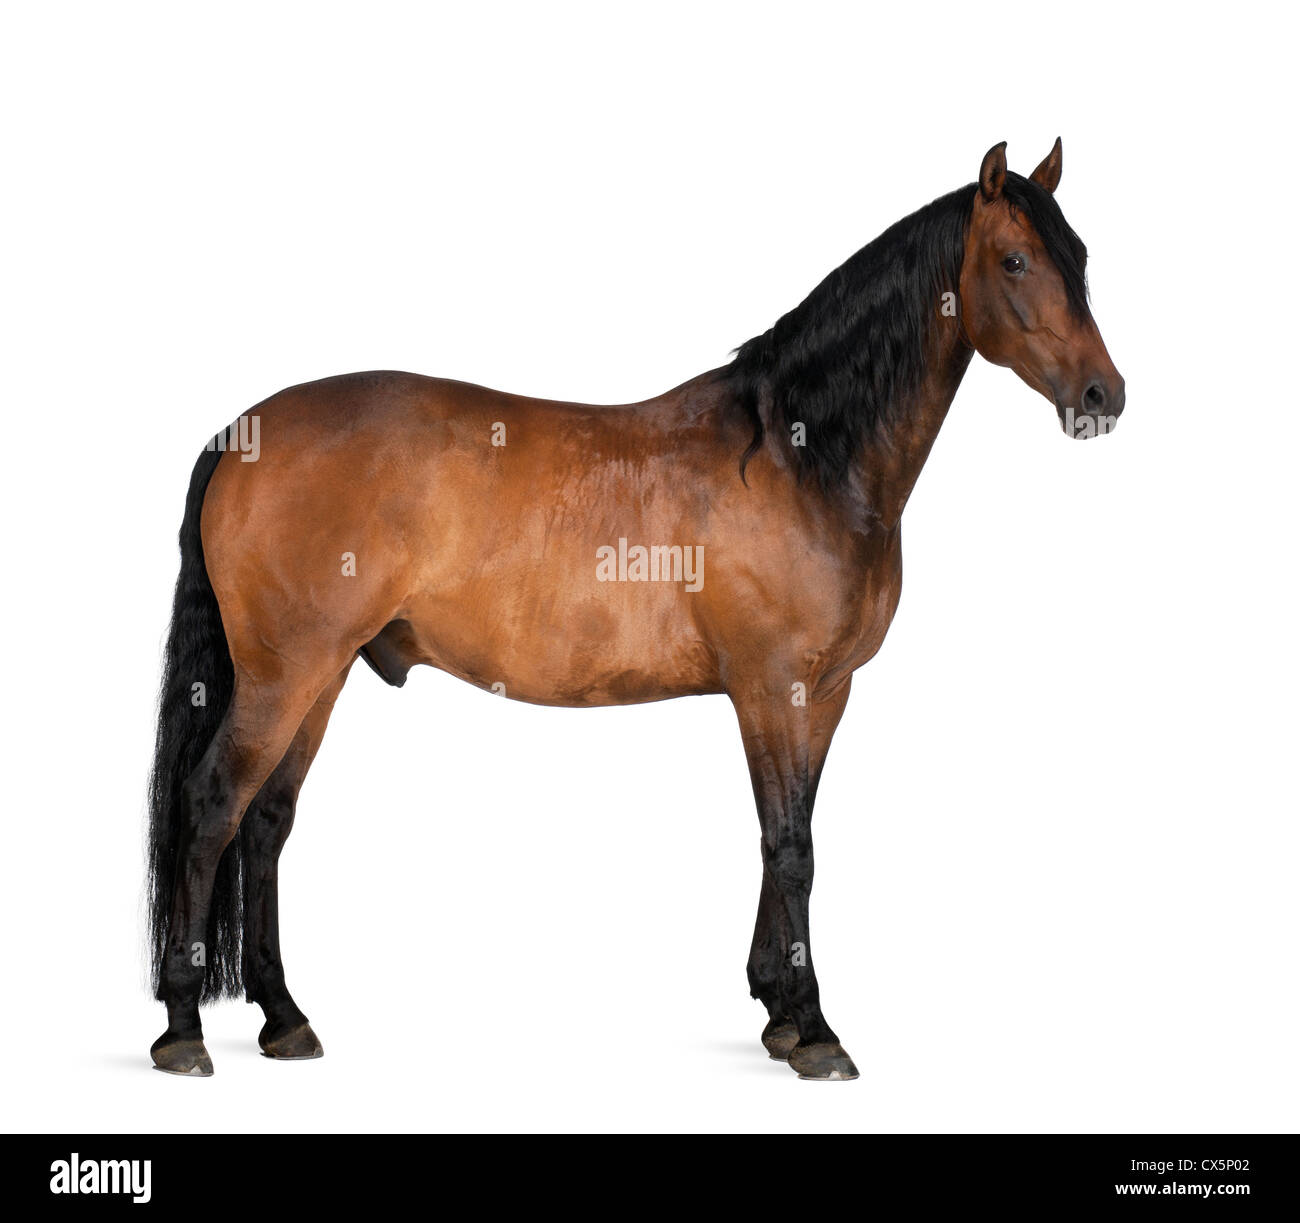 Race mixte de l'espagnol et de l'Arabian Horse, 8 ans, standing against white background Banque D'Images